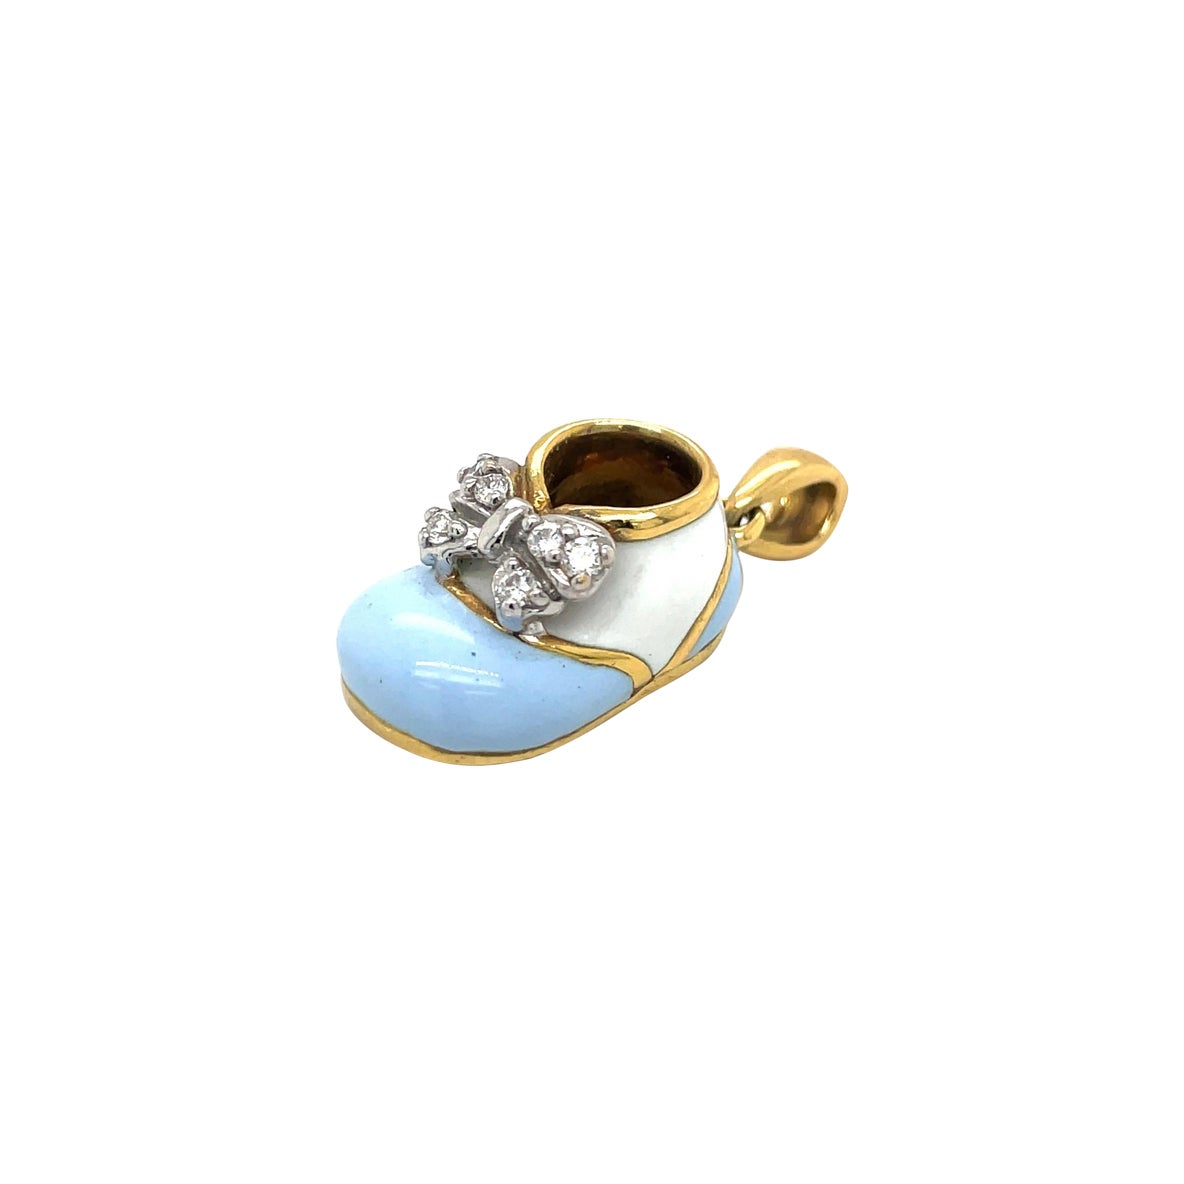 Chaussures baby Shoe en or jaune 18 carats, émail bleu clair/blanc et nœud en diamant 0,12 carat